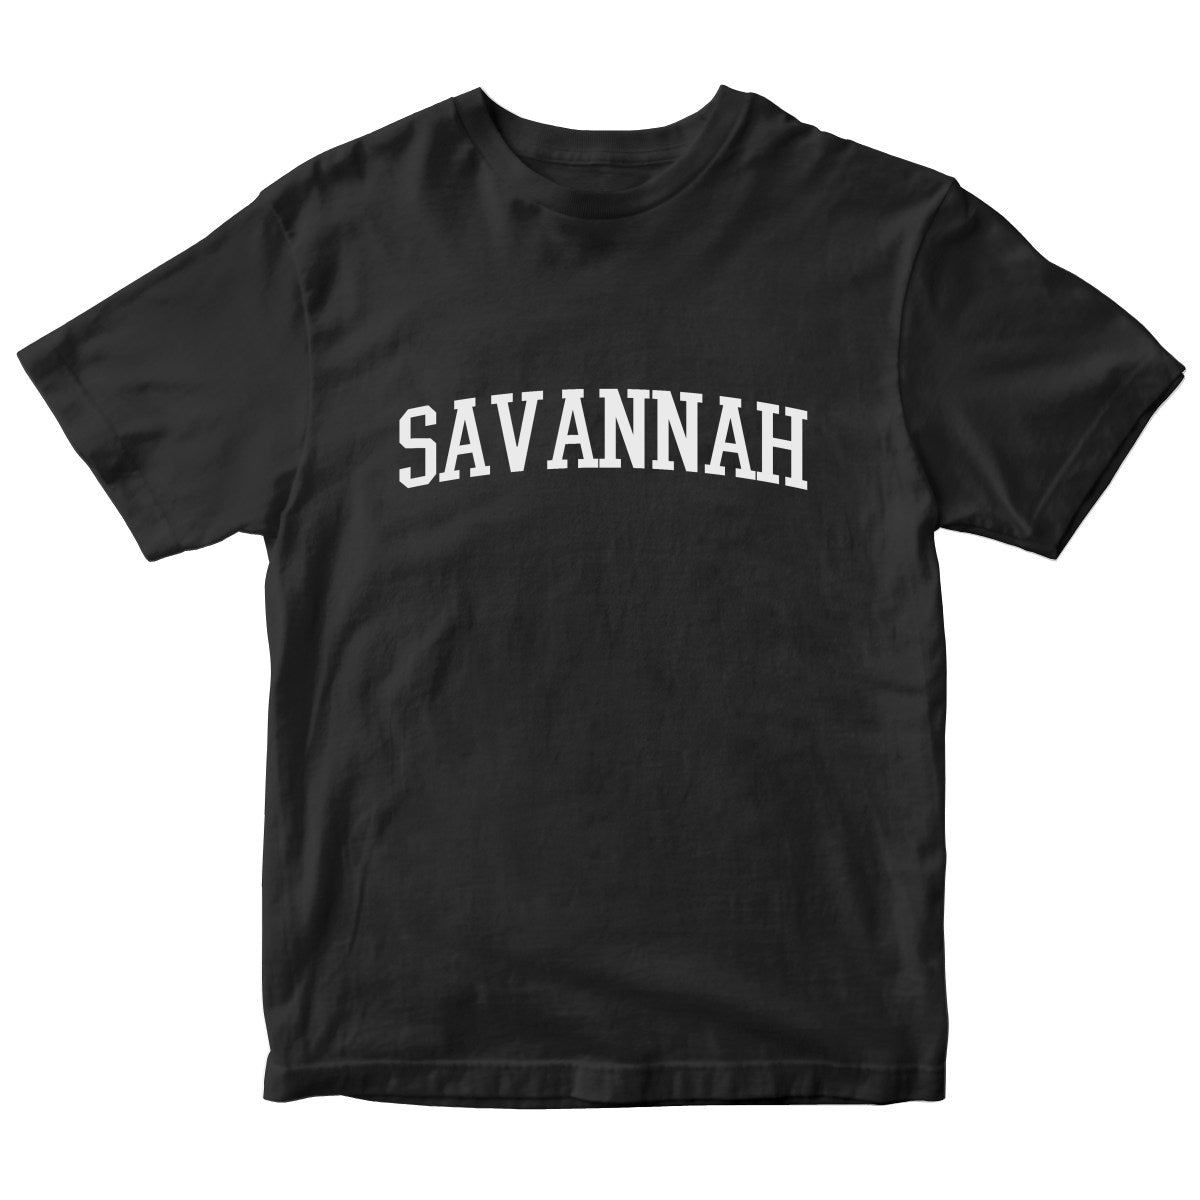 Savannah Kids T-shirt